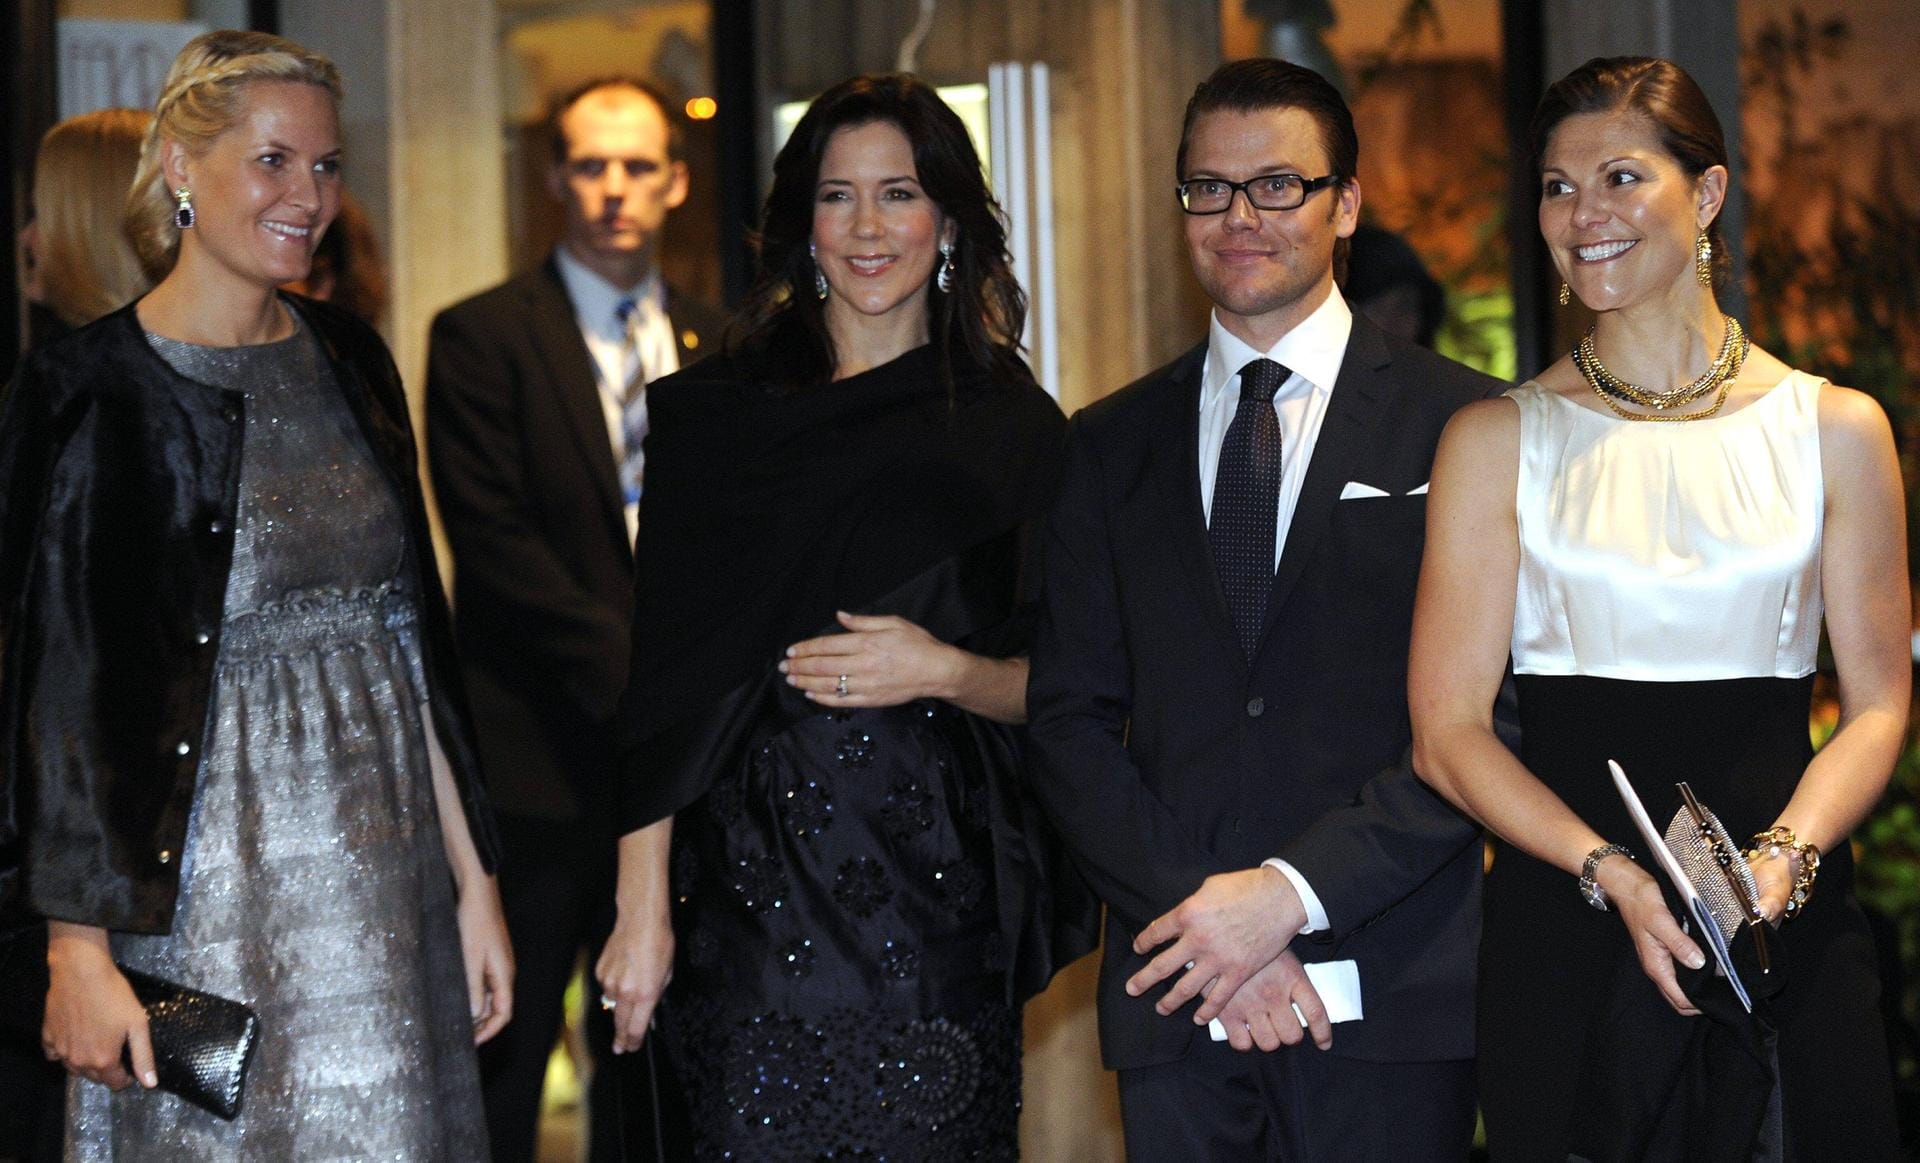 Royals unter sich: Mette-Marit, Mary von Dänemark und Schweden-Traumpaar Prinz Daniel und Prinzessin Victoria genießen die gemeinsame Zeit.